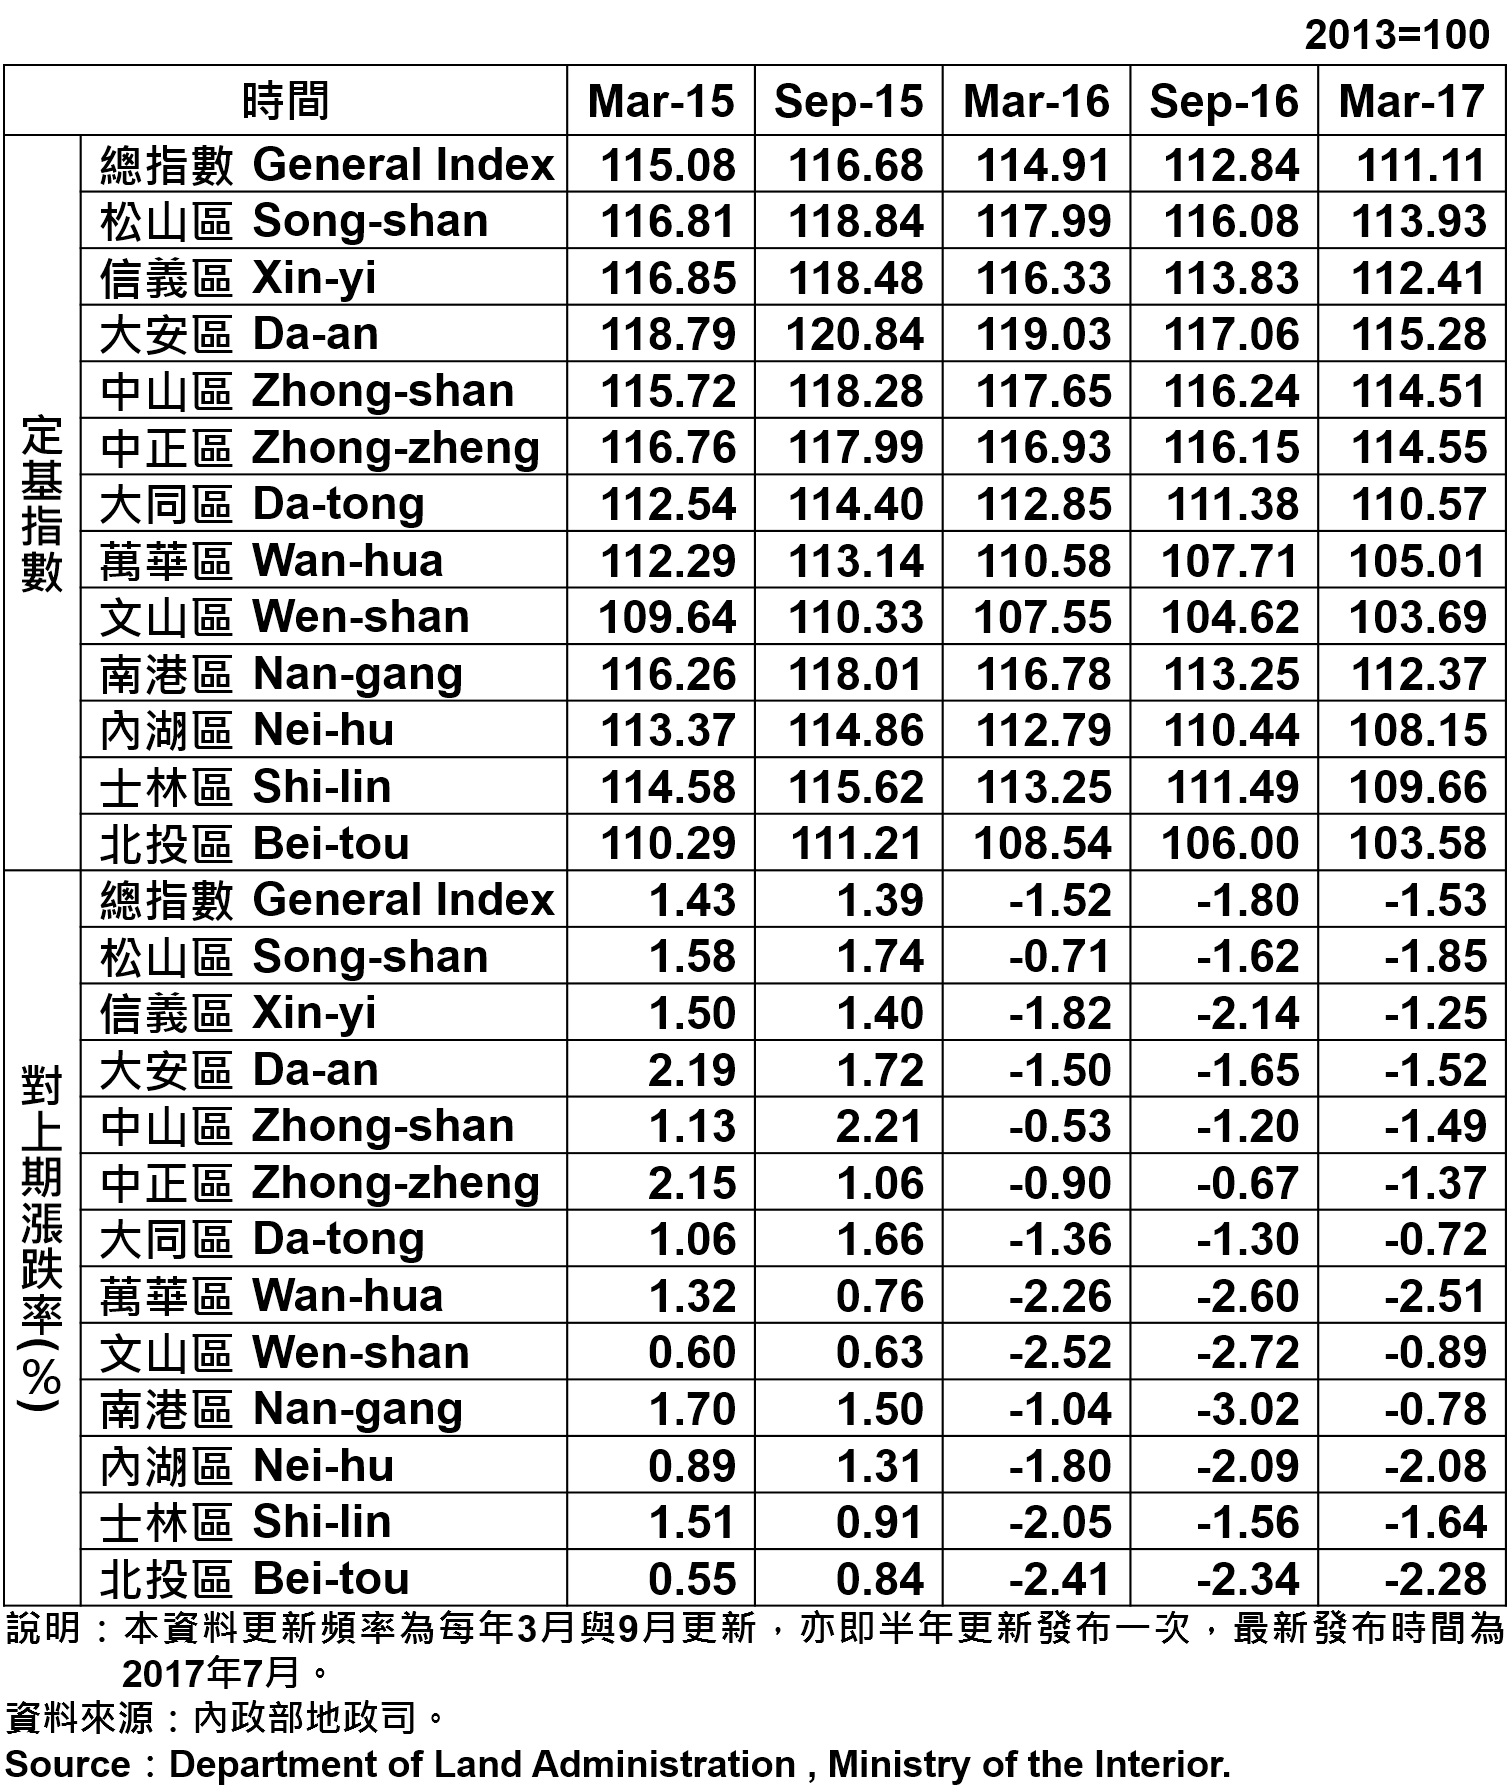 表1、臺北市都市地價指數分區表—48期 Taipei's Urban Land Price Indexes by Districts—48th